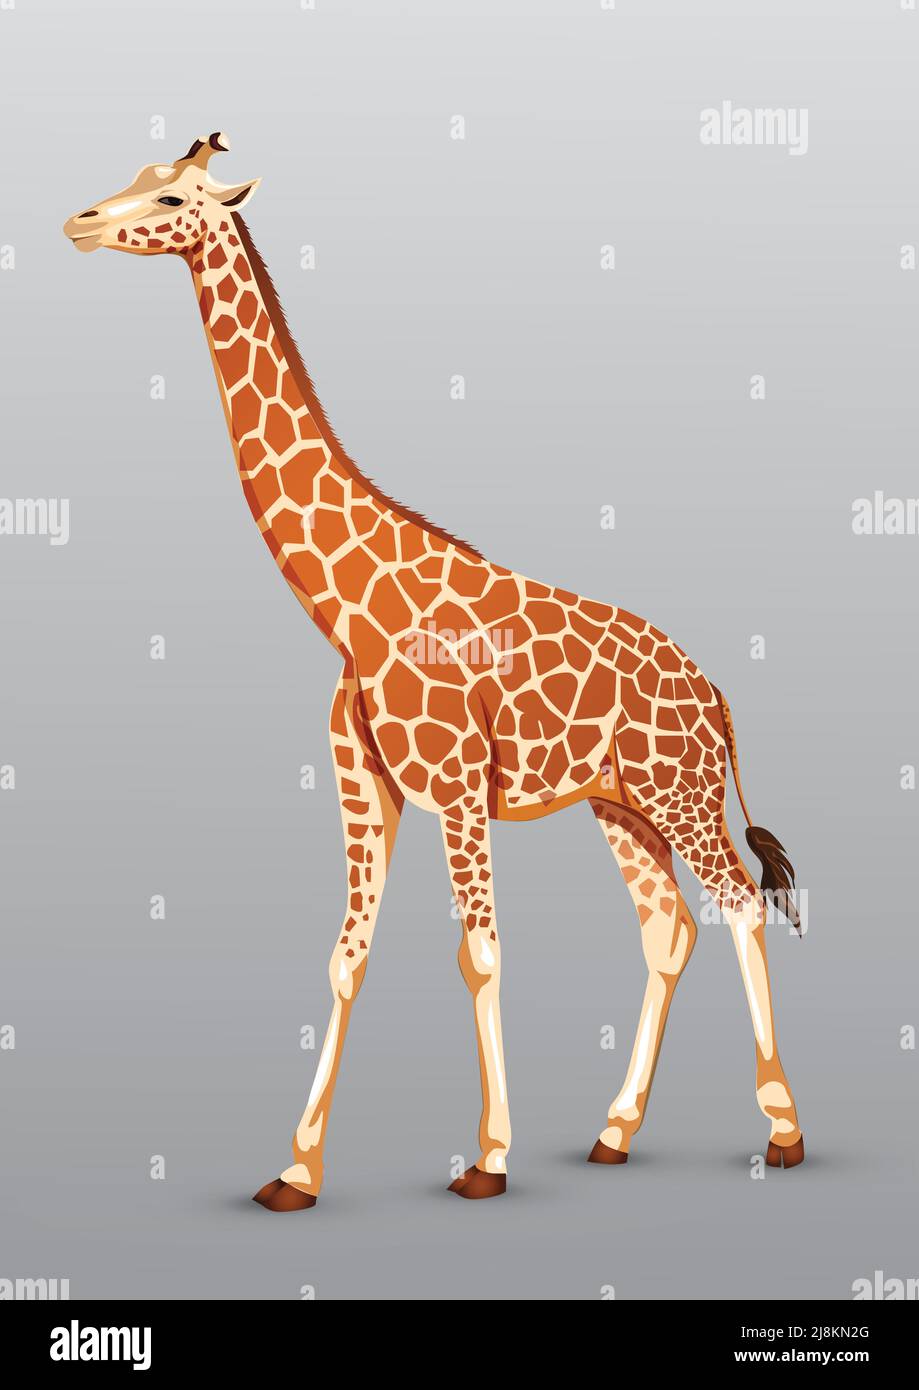 dessin de girafe pleine grandeur. illustration vectorielle Illustration de Vecteur